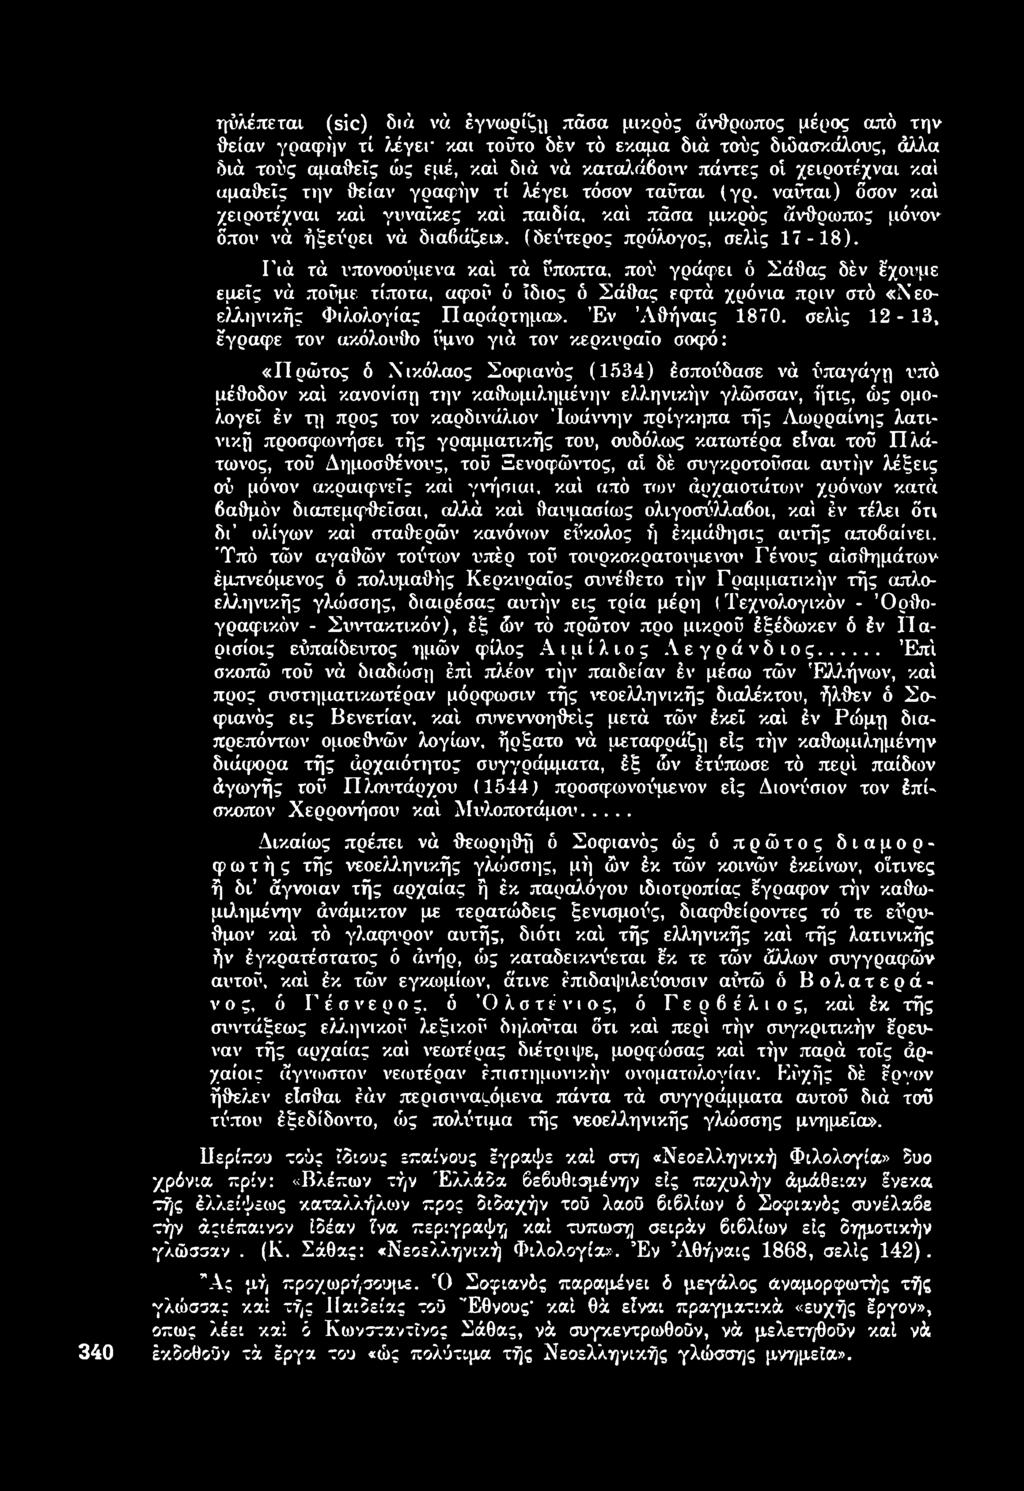 σελίς 12-13, έγραφε τον ακόλουθο ύμνο γιά τον κερκυραϊο σοφό: «Π ρώτος ό Νικόλαος Σοφιανός (1 5 3 4 ) έσπούδασε νά ύπαγάγη υπό μέθοδον καί κανονίση την καθωμιλημένην ελληνικήν γλώσσαν, ήτις, ώς